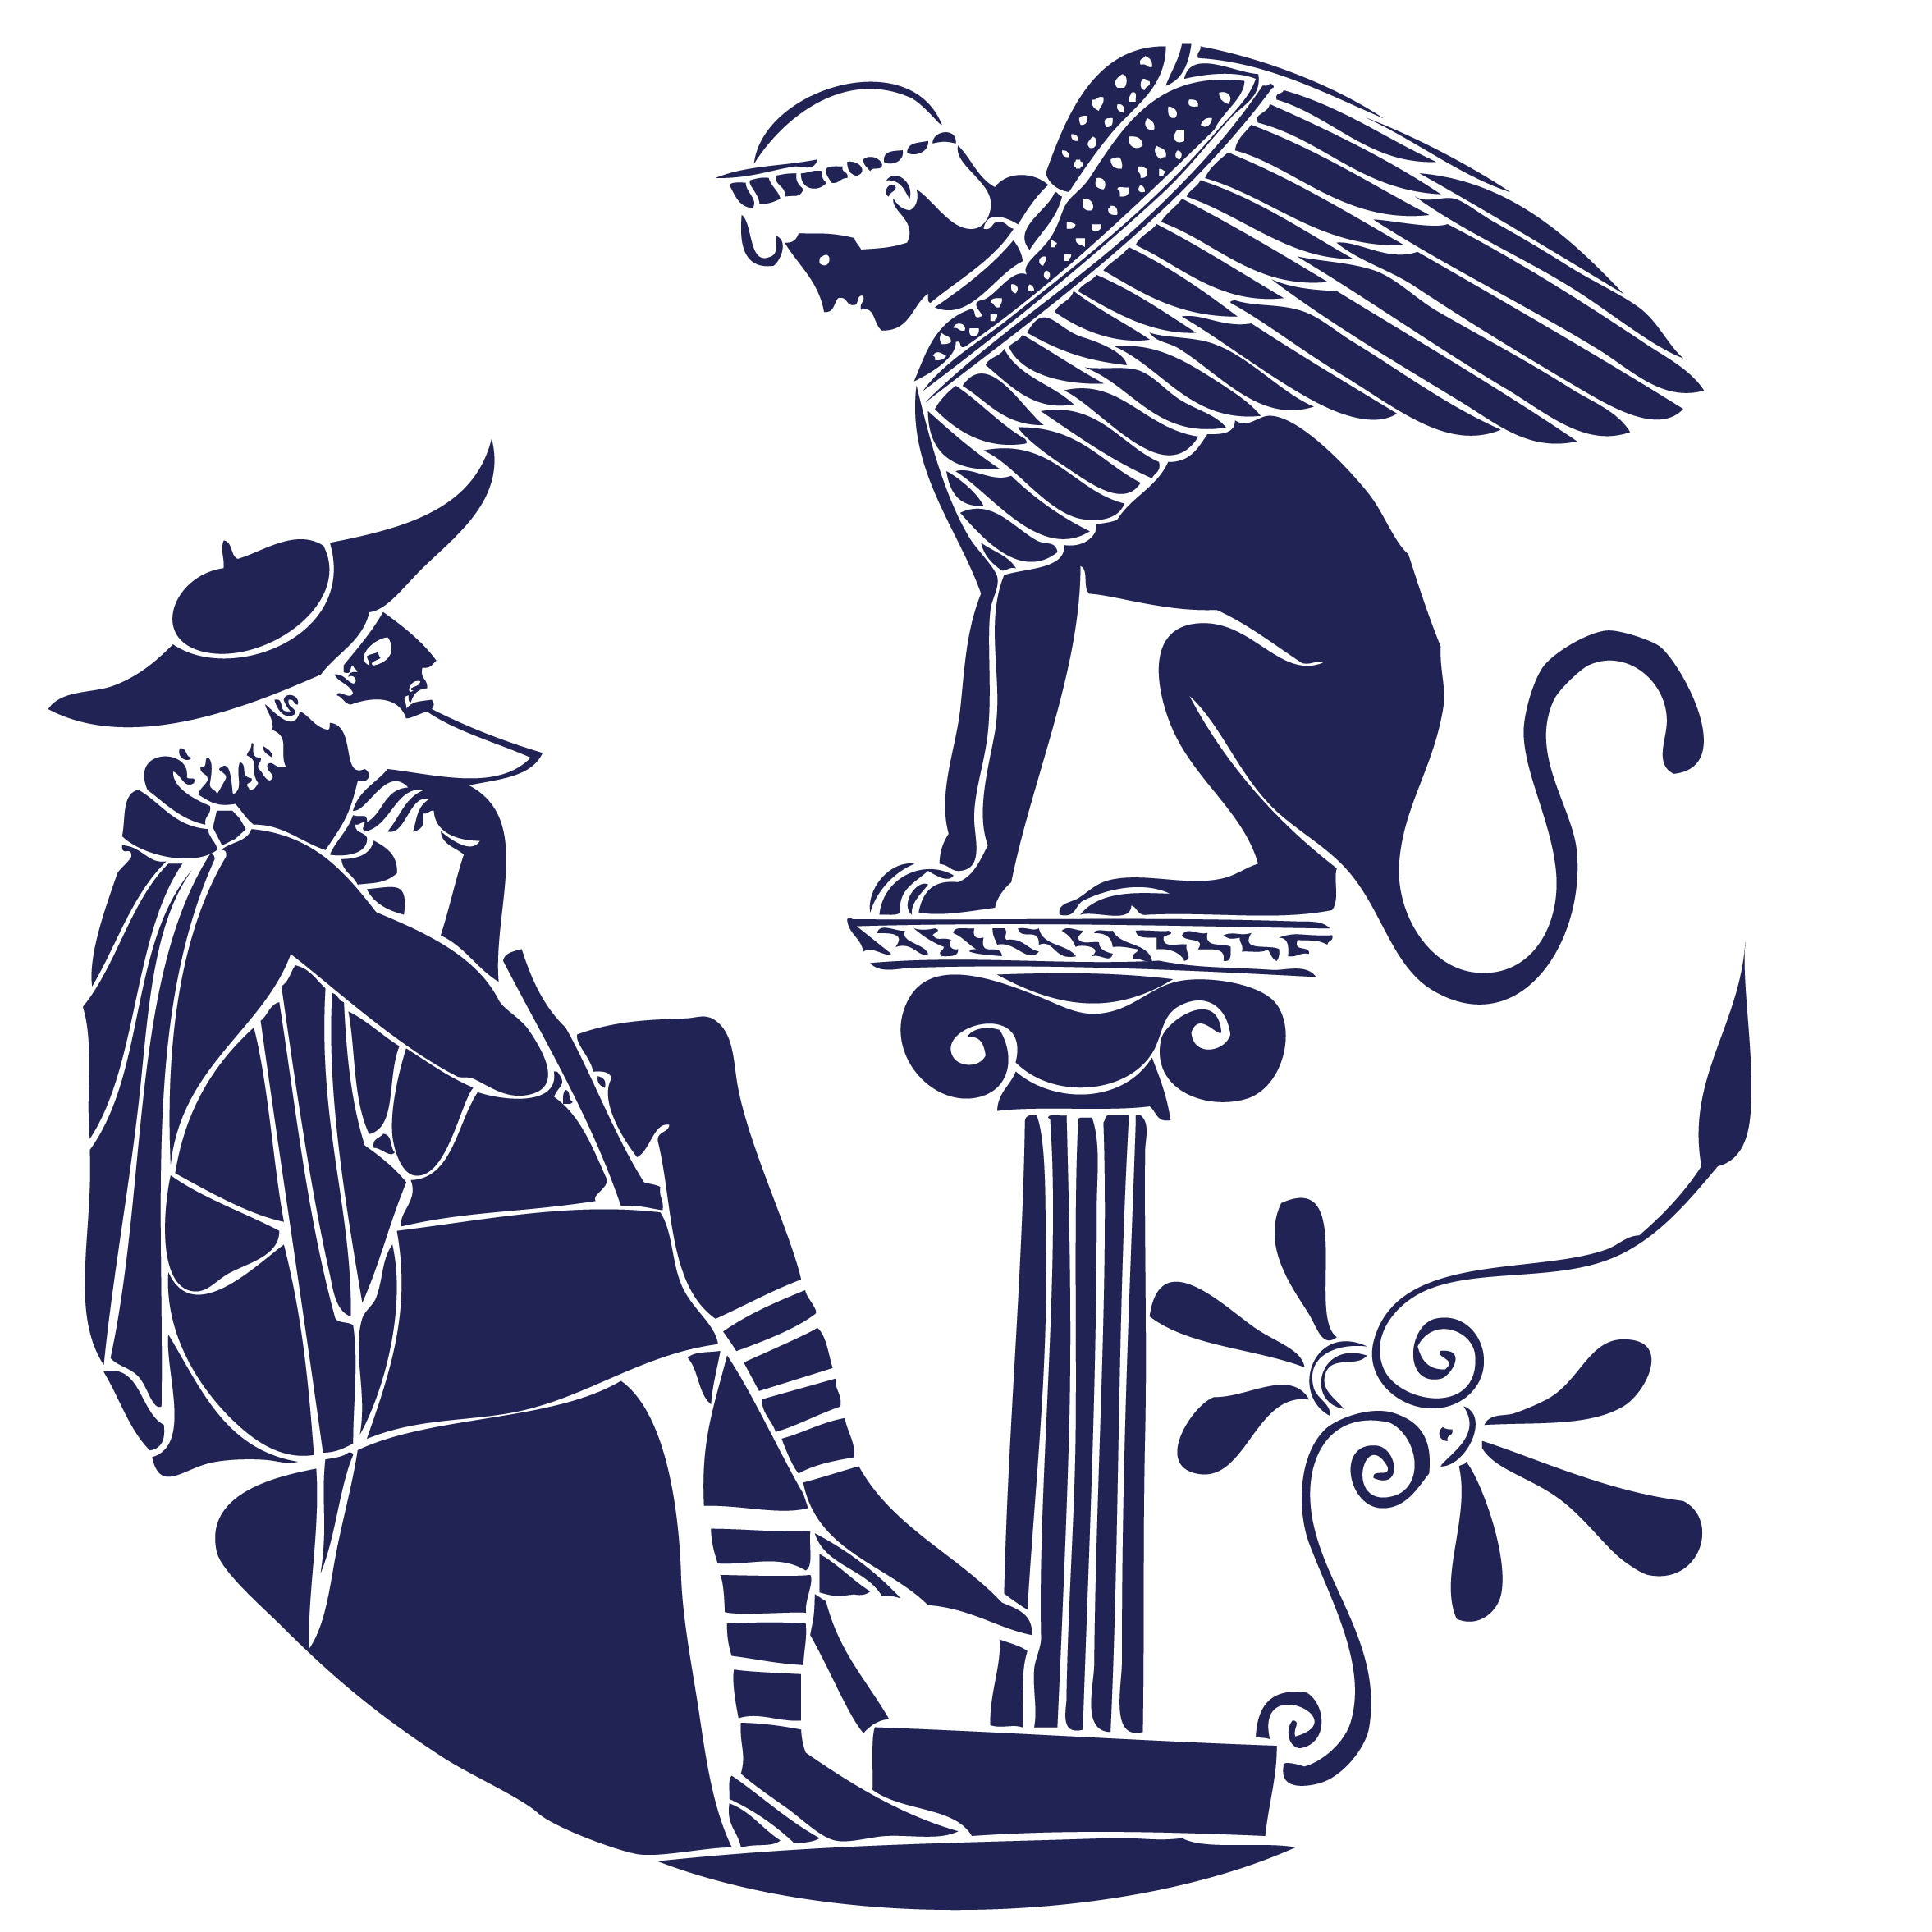 Logo von SGPA, in der eine Mischung aus Mensch, Adler und Katze auf einer Säule vor einem älteren Mann sitzt.